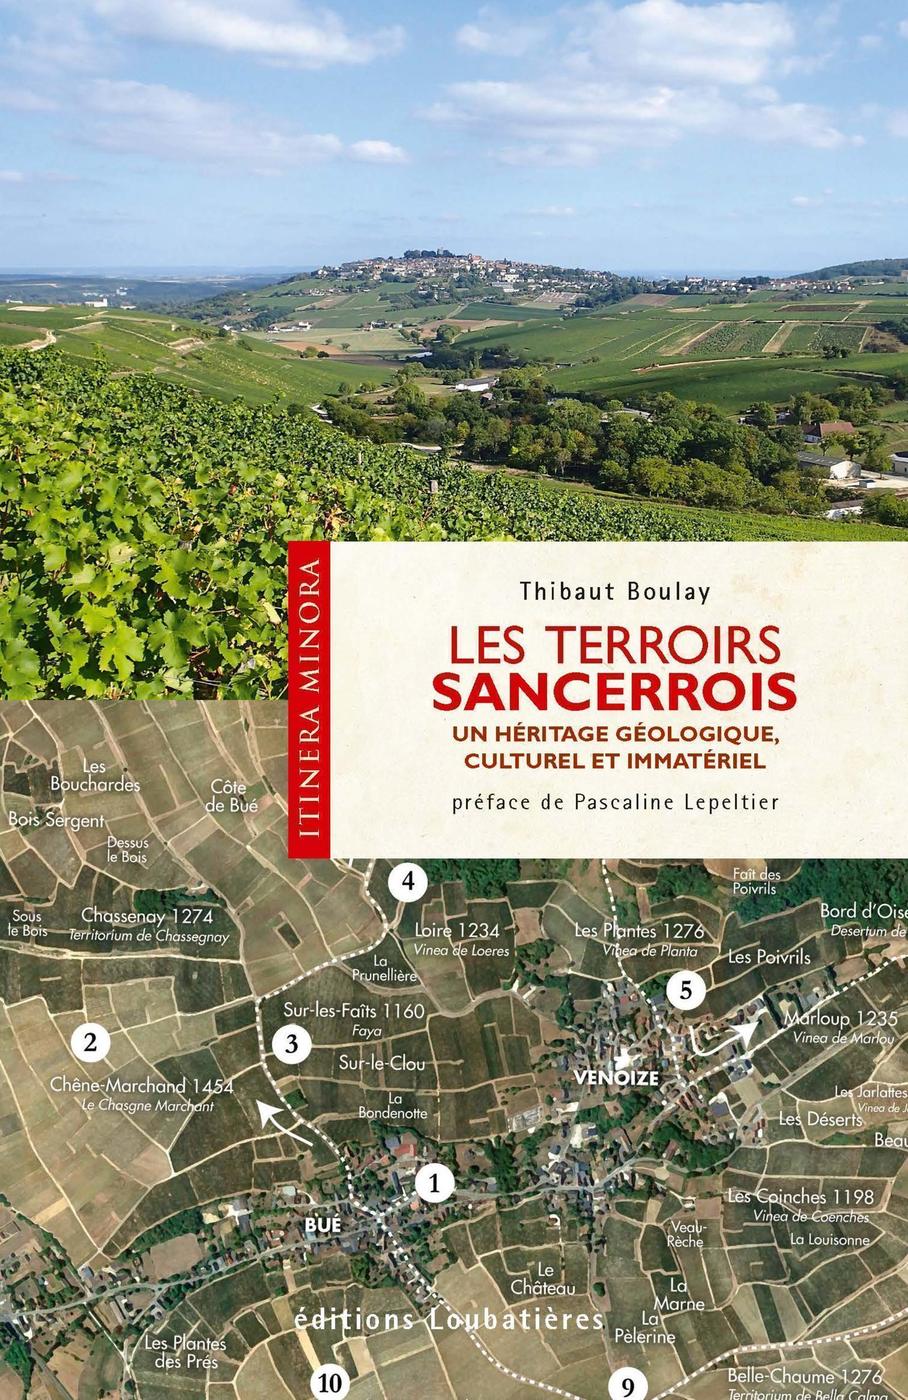 Les terroirs Sancerrois: Un héritage géologique, culturel et immatériel